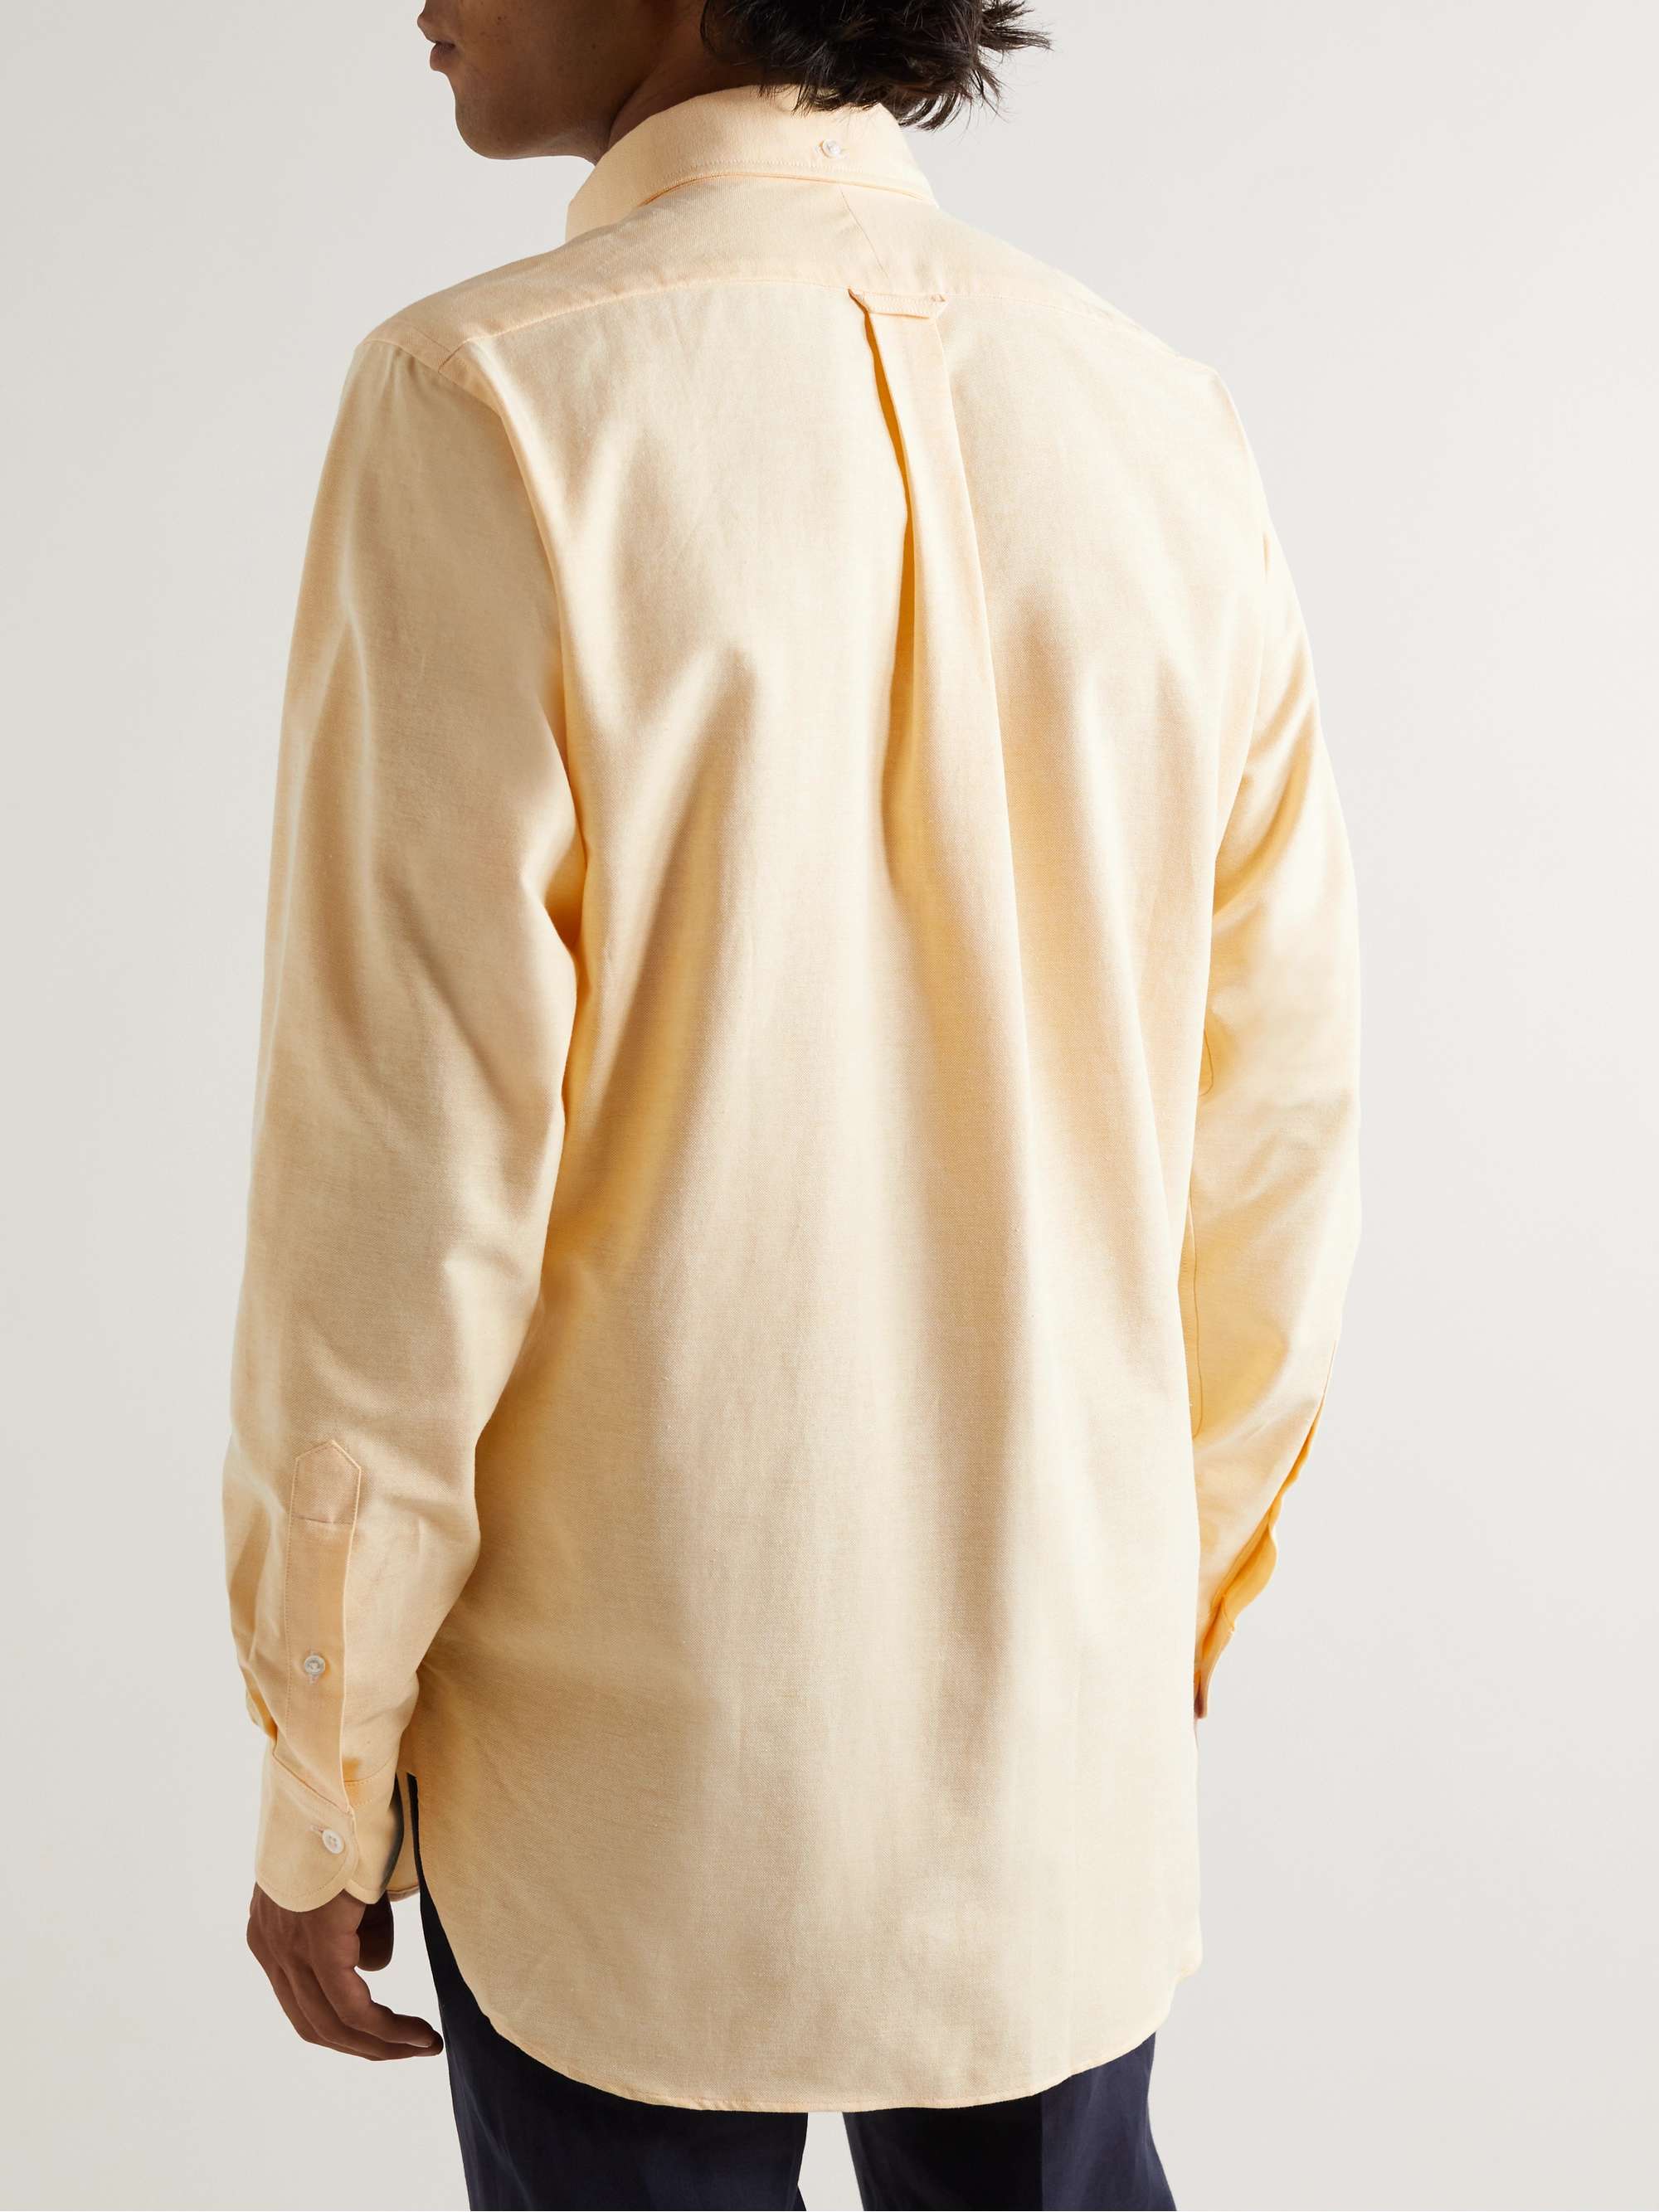 KINGSMAN Slim-Fit Button-Down Collar Cotton Oxford Shirt